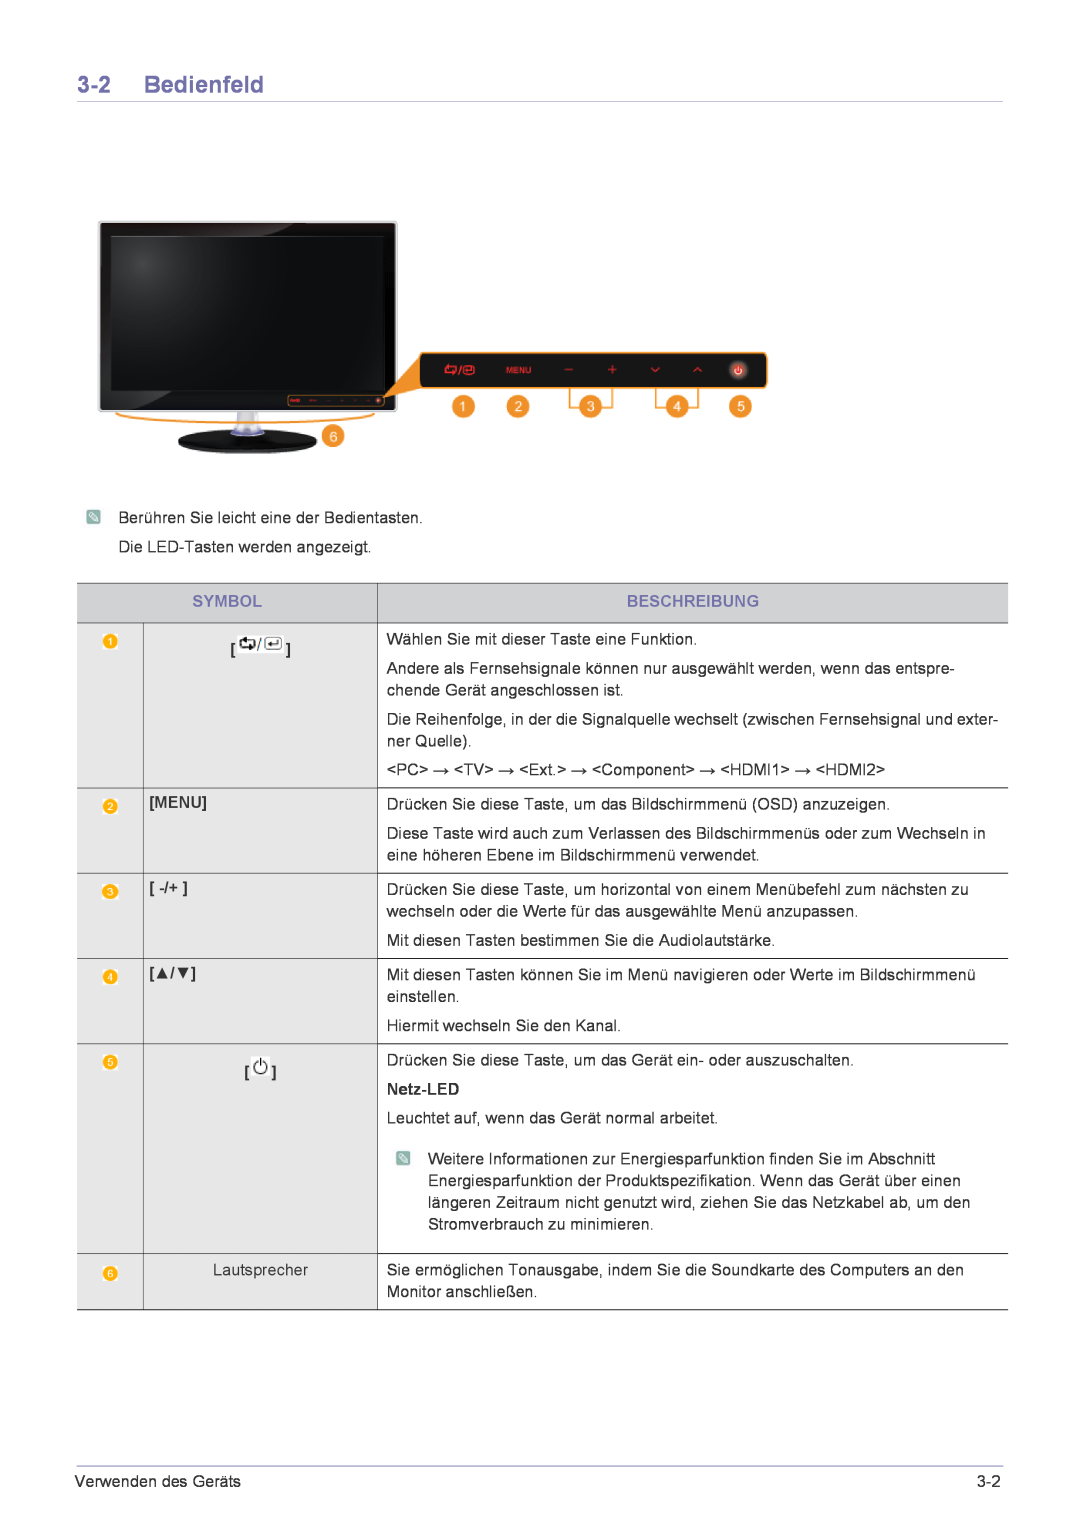 Samsung LS24EMLKF/EN manual Bedienfeld, Beschreibung, Symbol, Menu, Netz-LED 